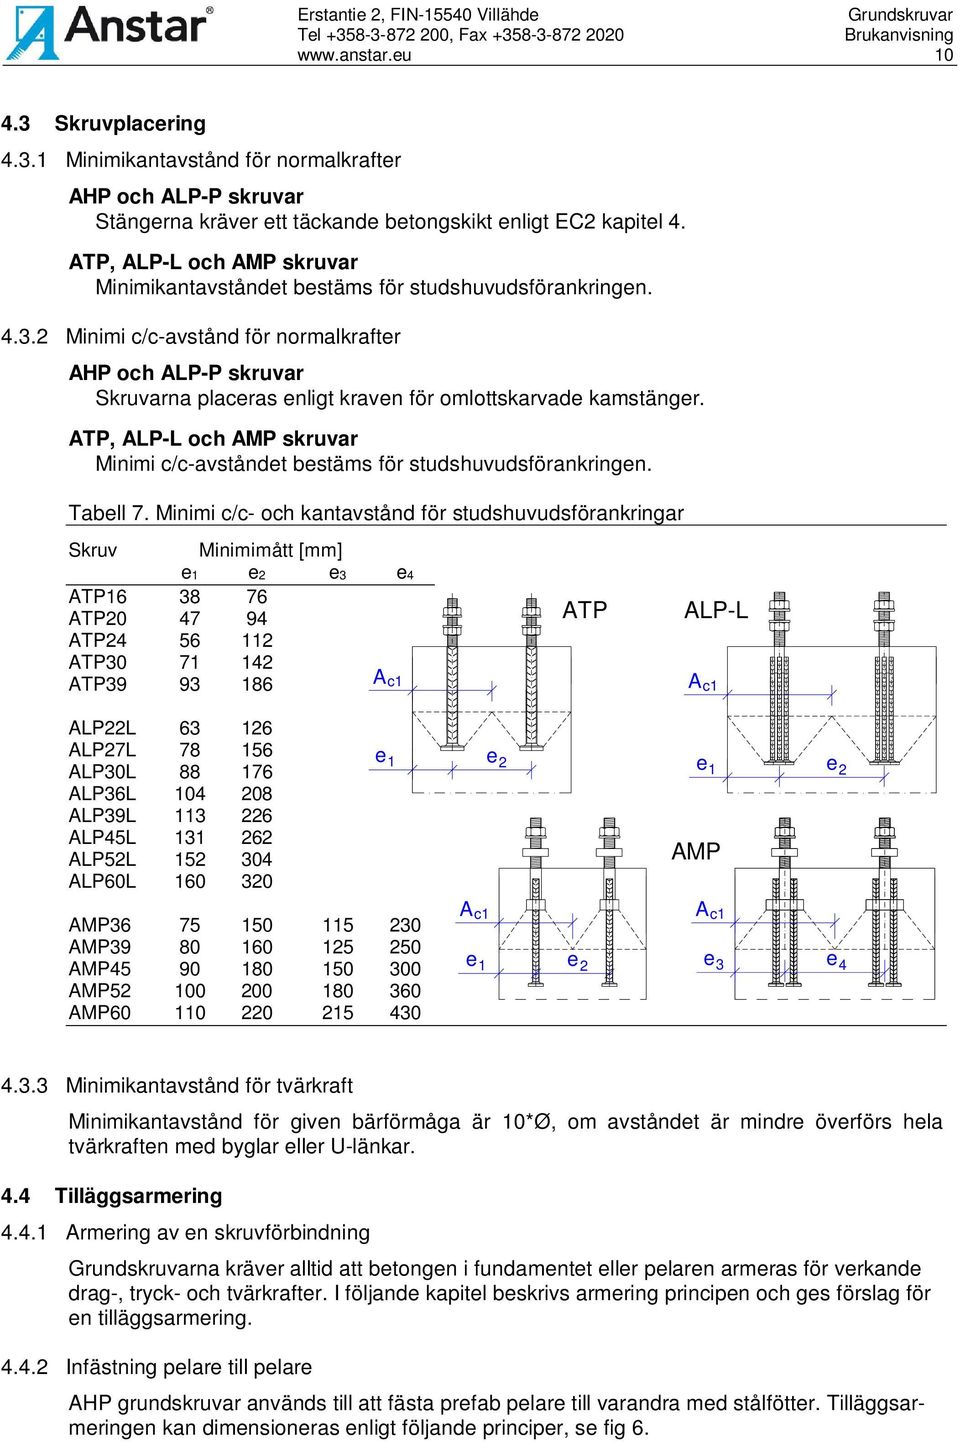 2 Minimi c/c-avstånd för normalkrafter AHP och ALP-P skruvar Skruvarna placeras enligt kraven för omlottskarvade kamstänger.